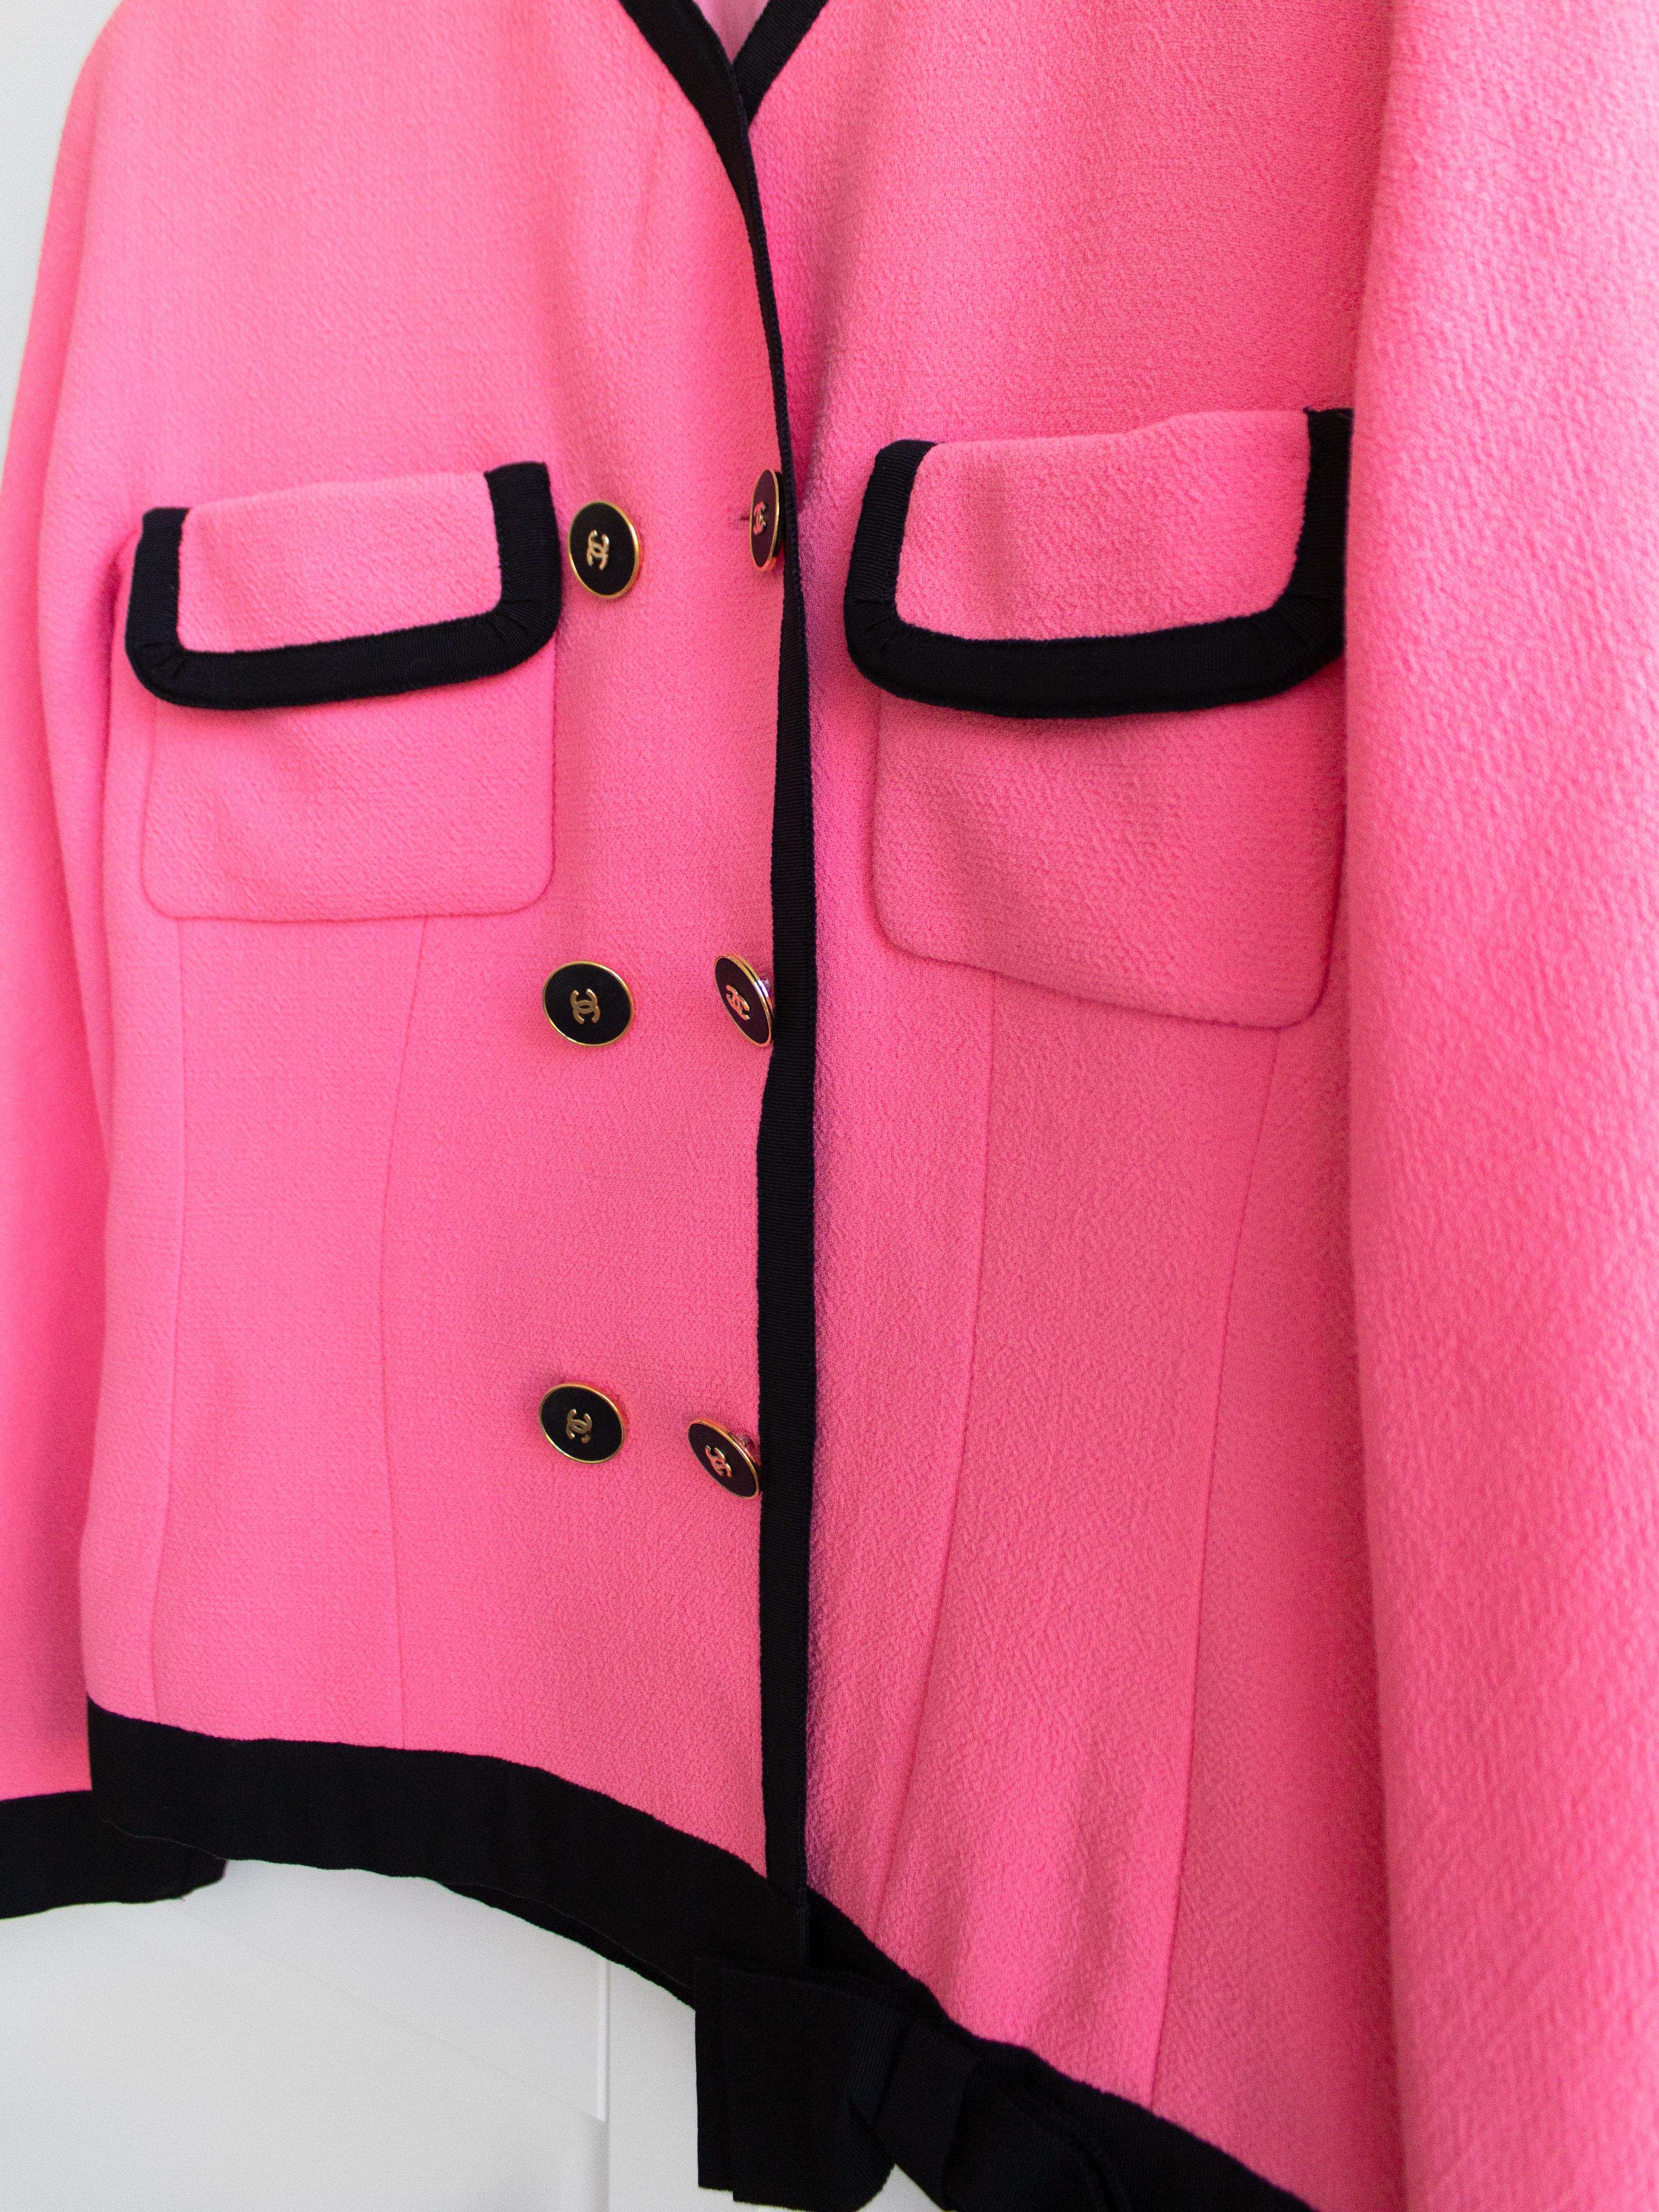 Chanel Vintage Spring 1991 Linda Pink Black Bow Jacket Skirt Suit 3